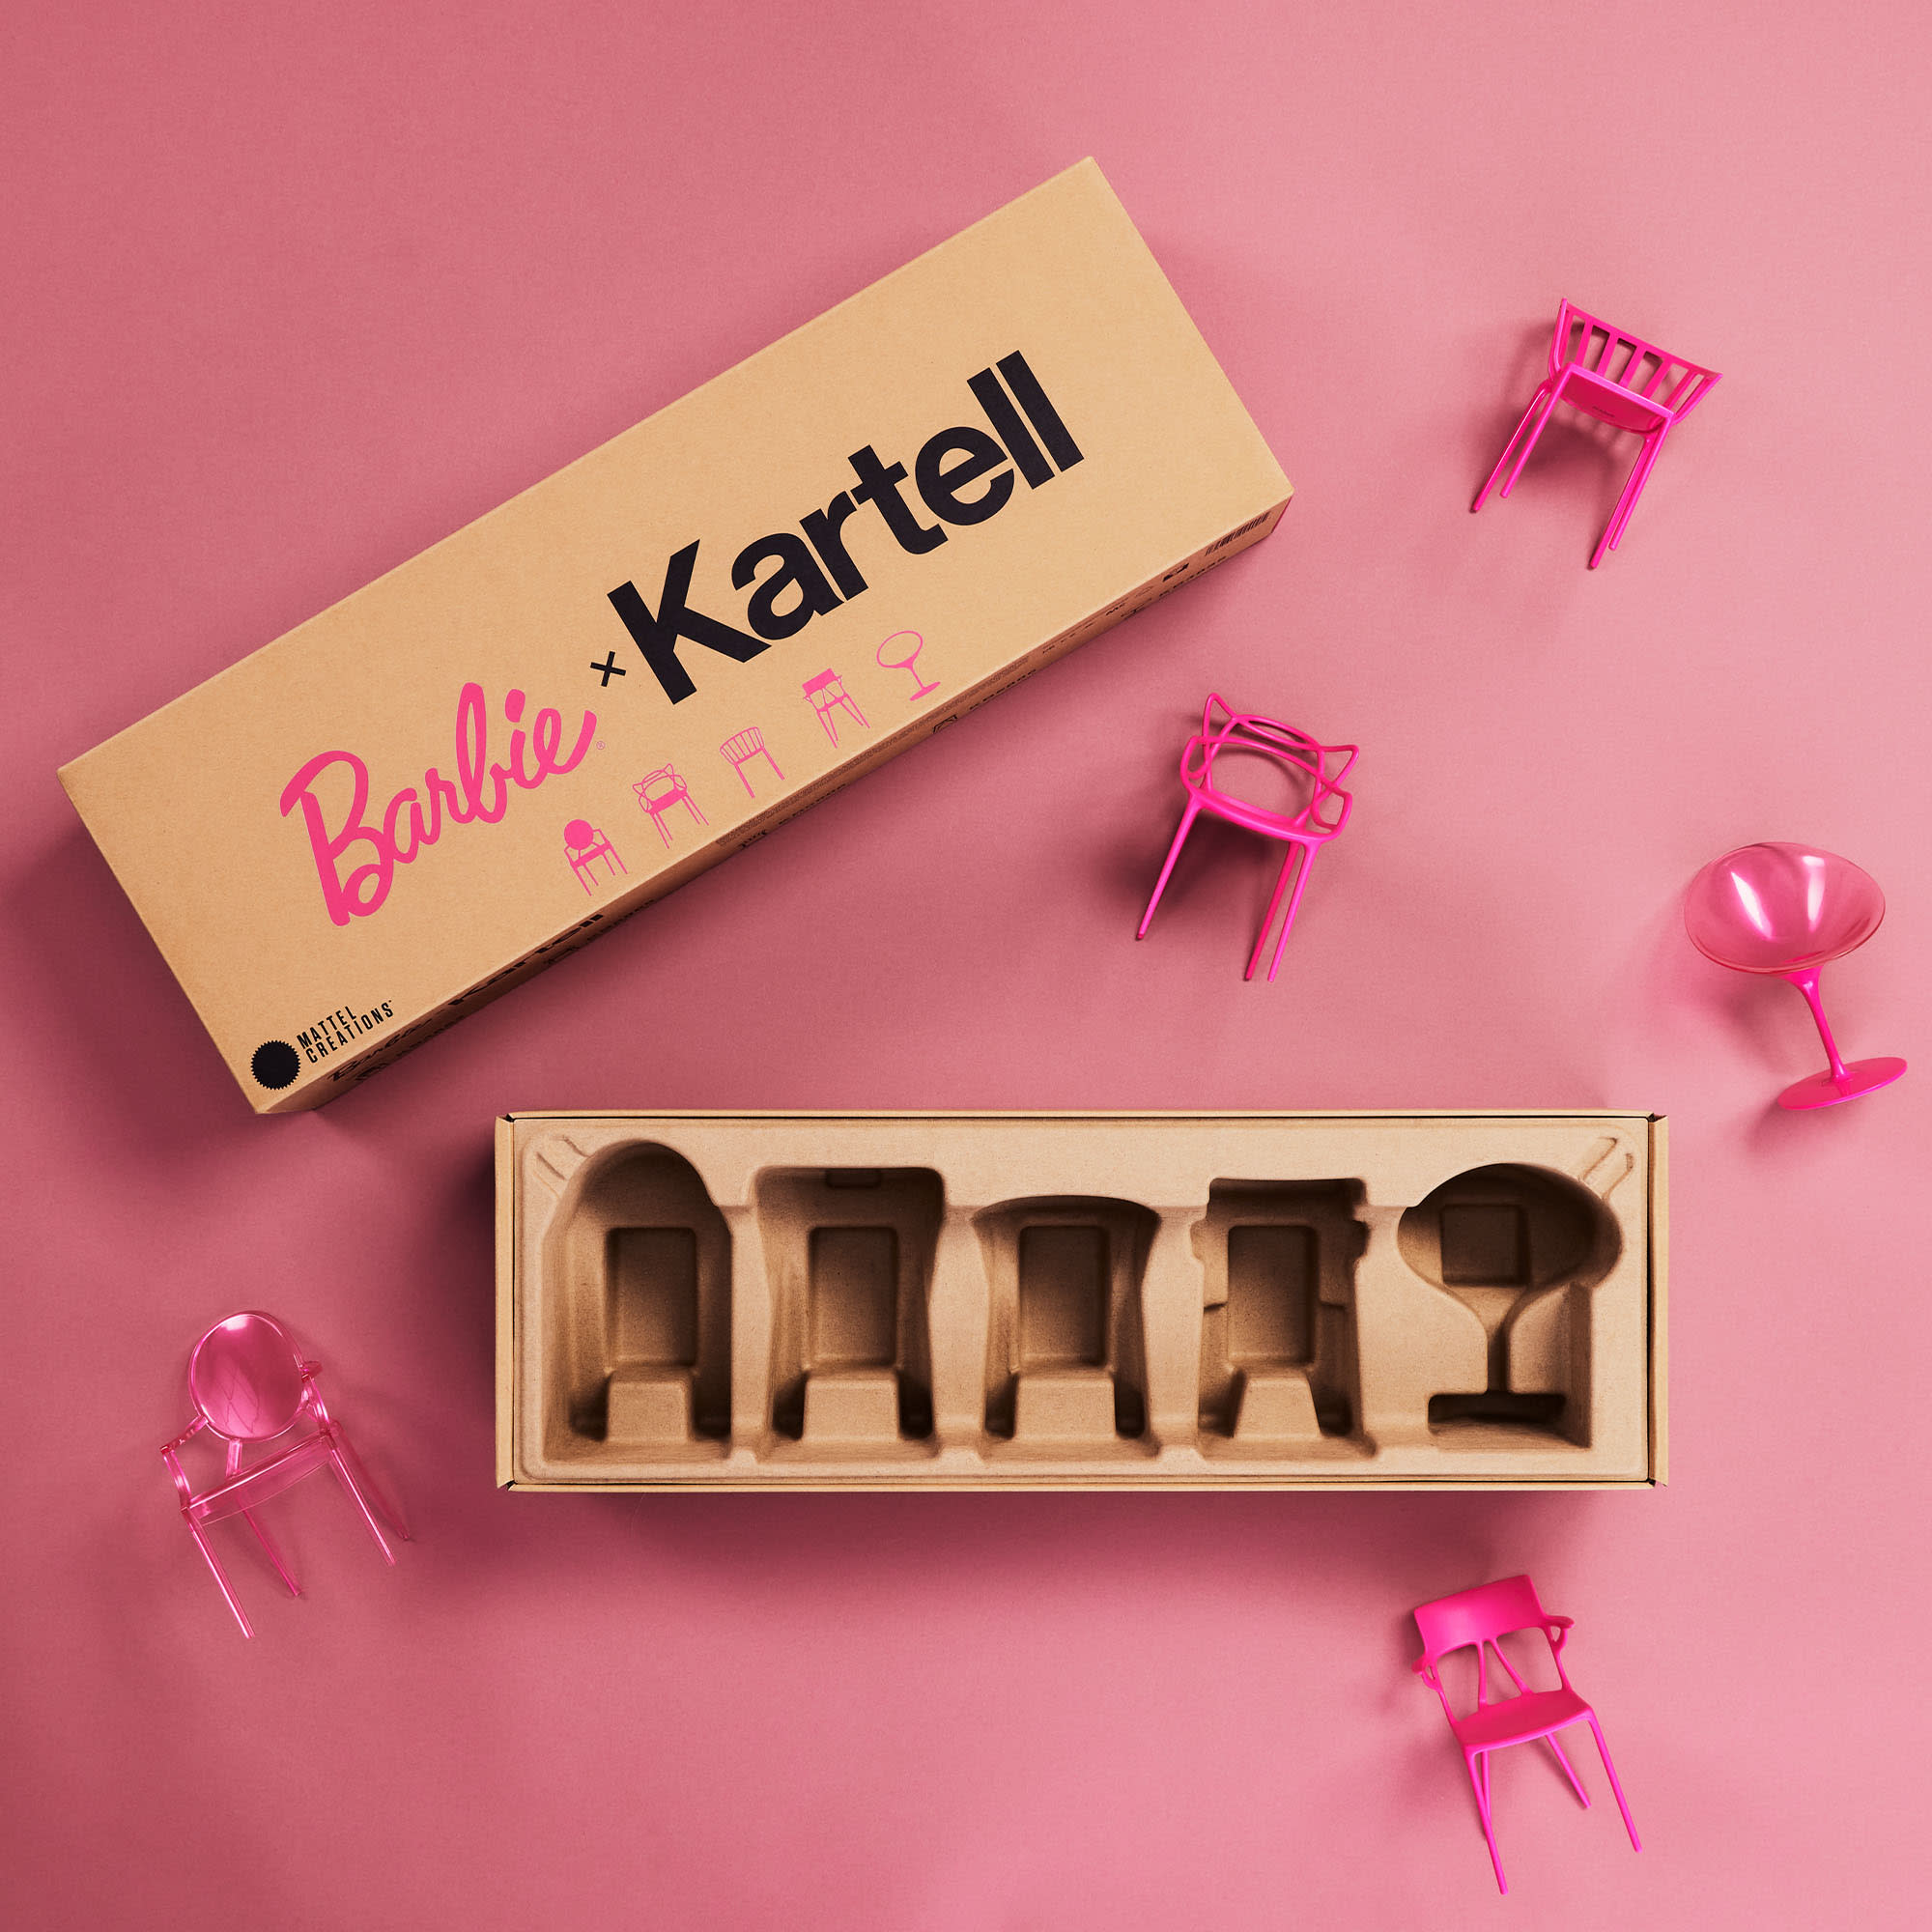 Barbie x Kartell 5-Piece Doll-Sized Chair Set